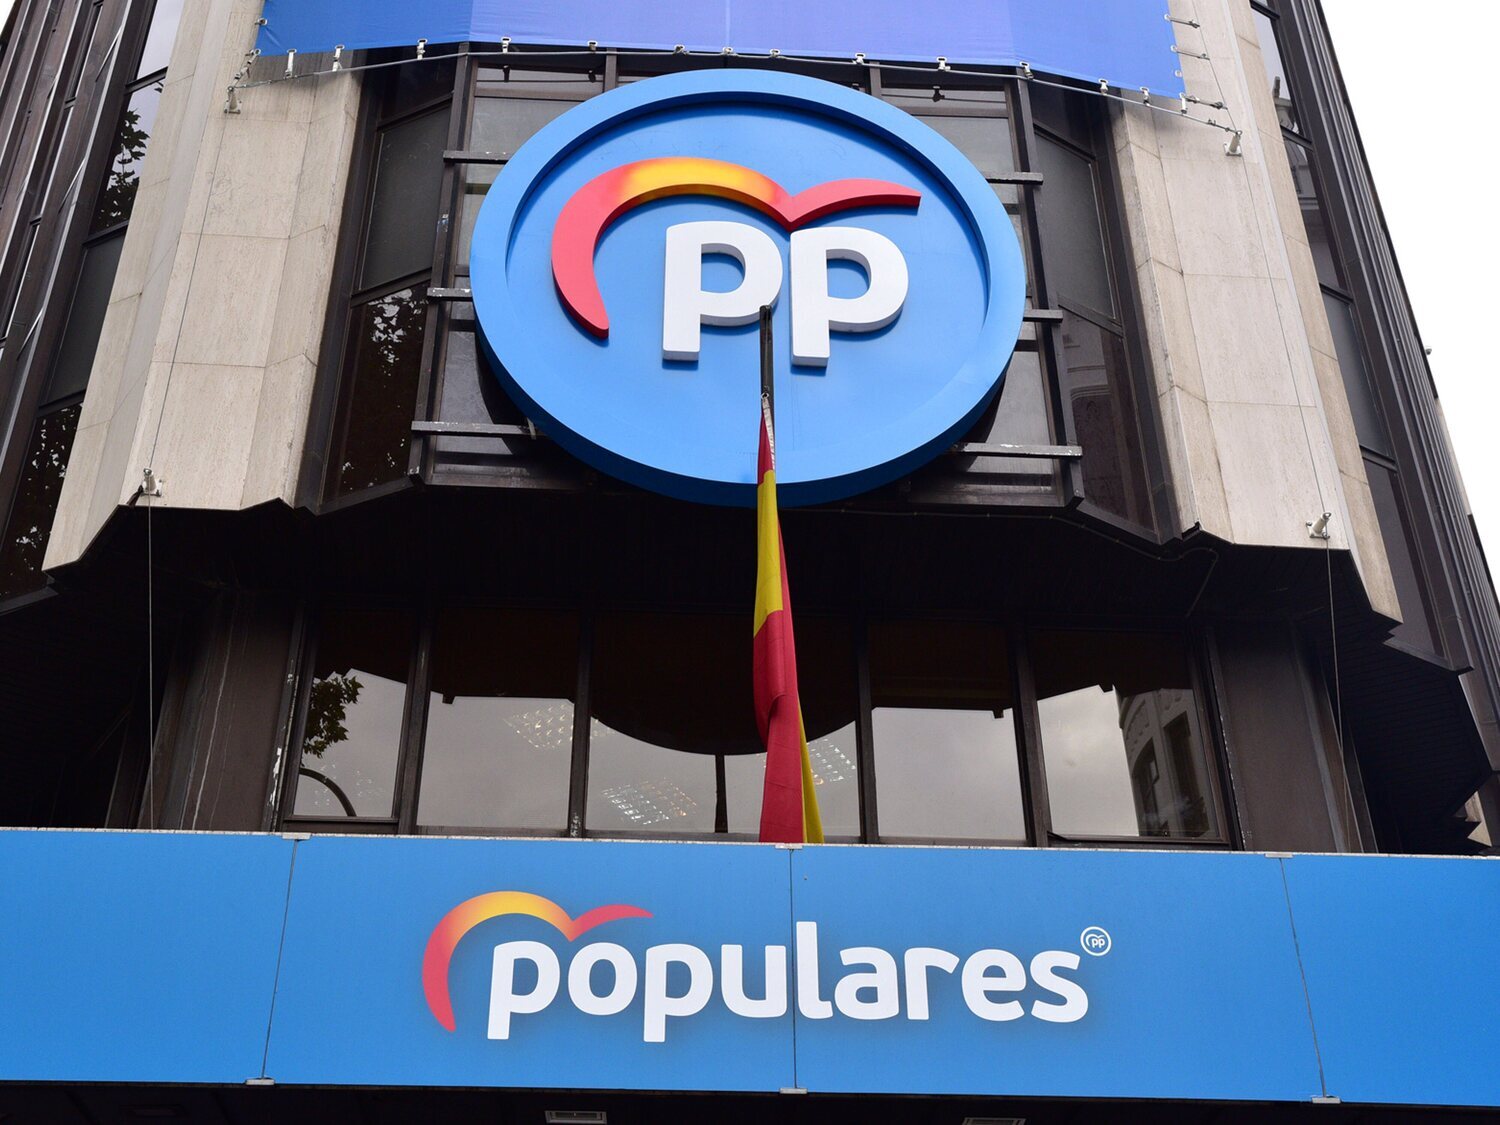 El PP no se va de Génova: Feijóo anuncia que no se venderá la sede